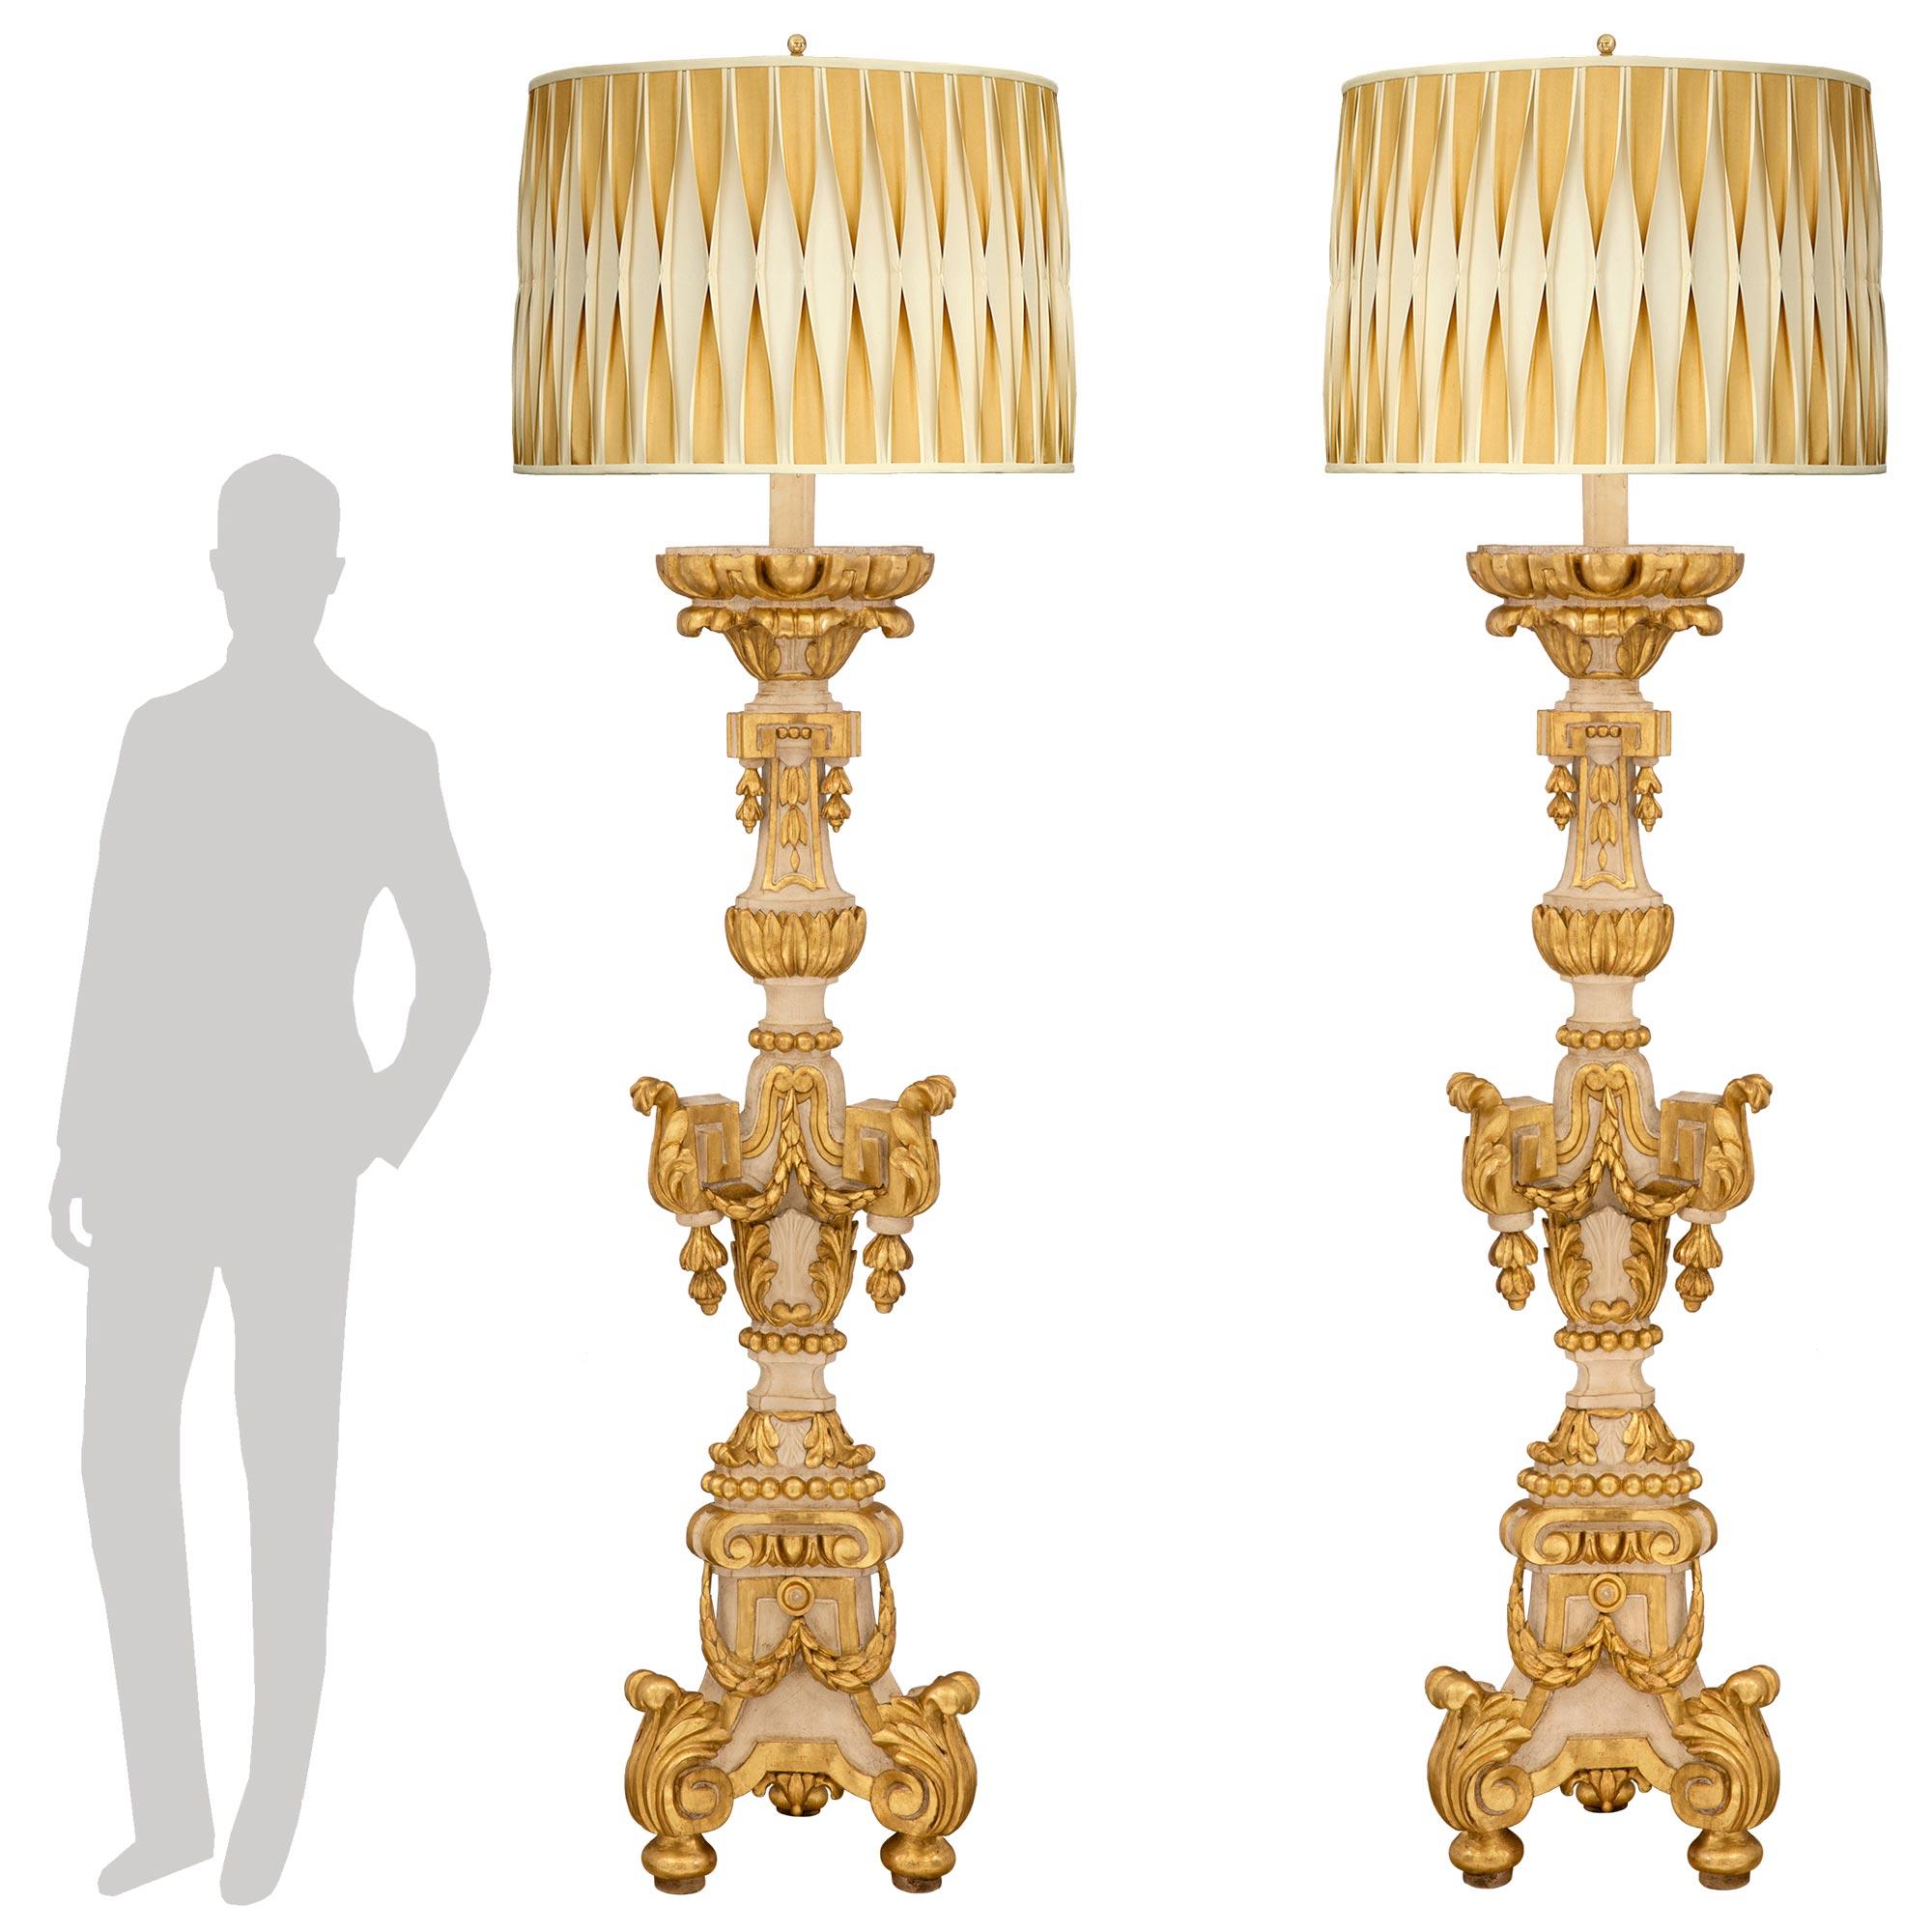 Ein prächtiges und sehr großes Paar italienischer Stehlampen aus dem 18. Jahrhundert, patiniert und aus vergoldetem Holz. Jede Torchière-Stehleuchte steht auf eleganten, spitzen Füßen mit großen Akanthusblättern an der dreieckigen Basis, die mit